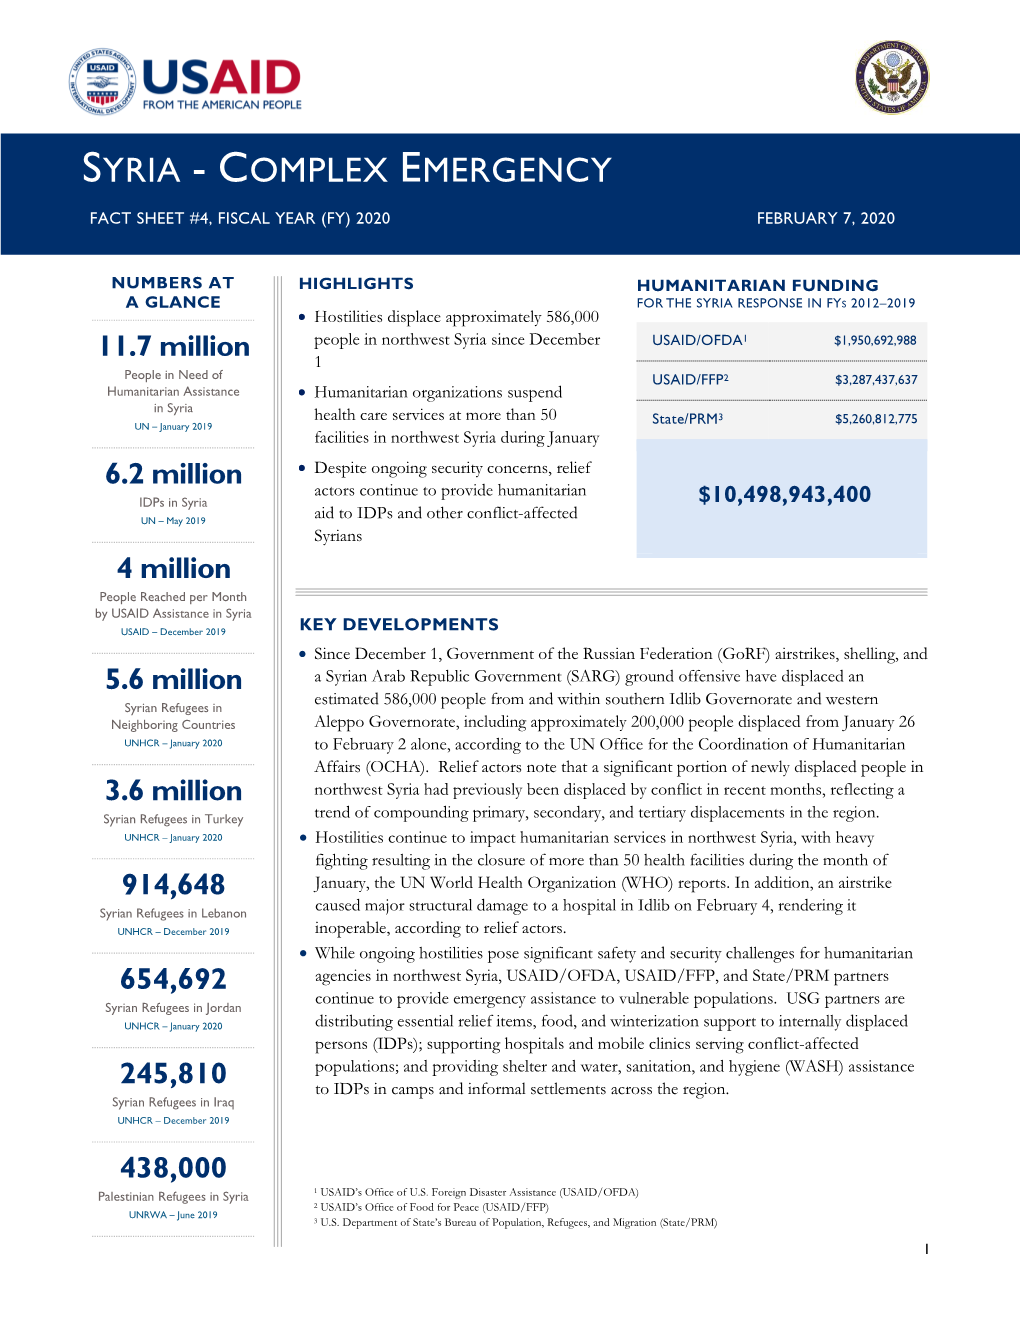 Syria Complex Emergency